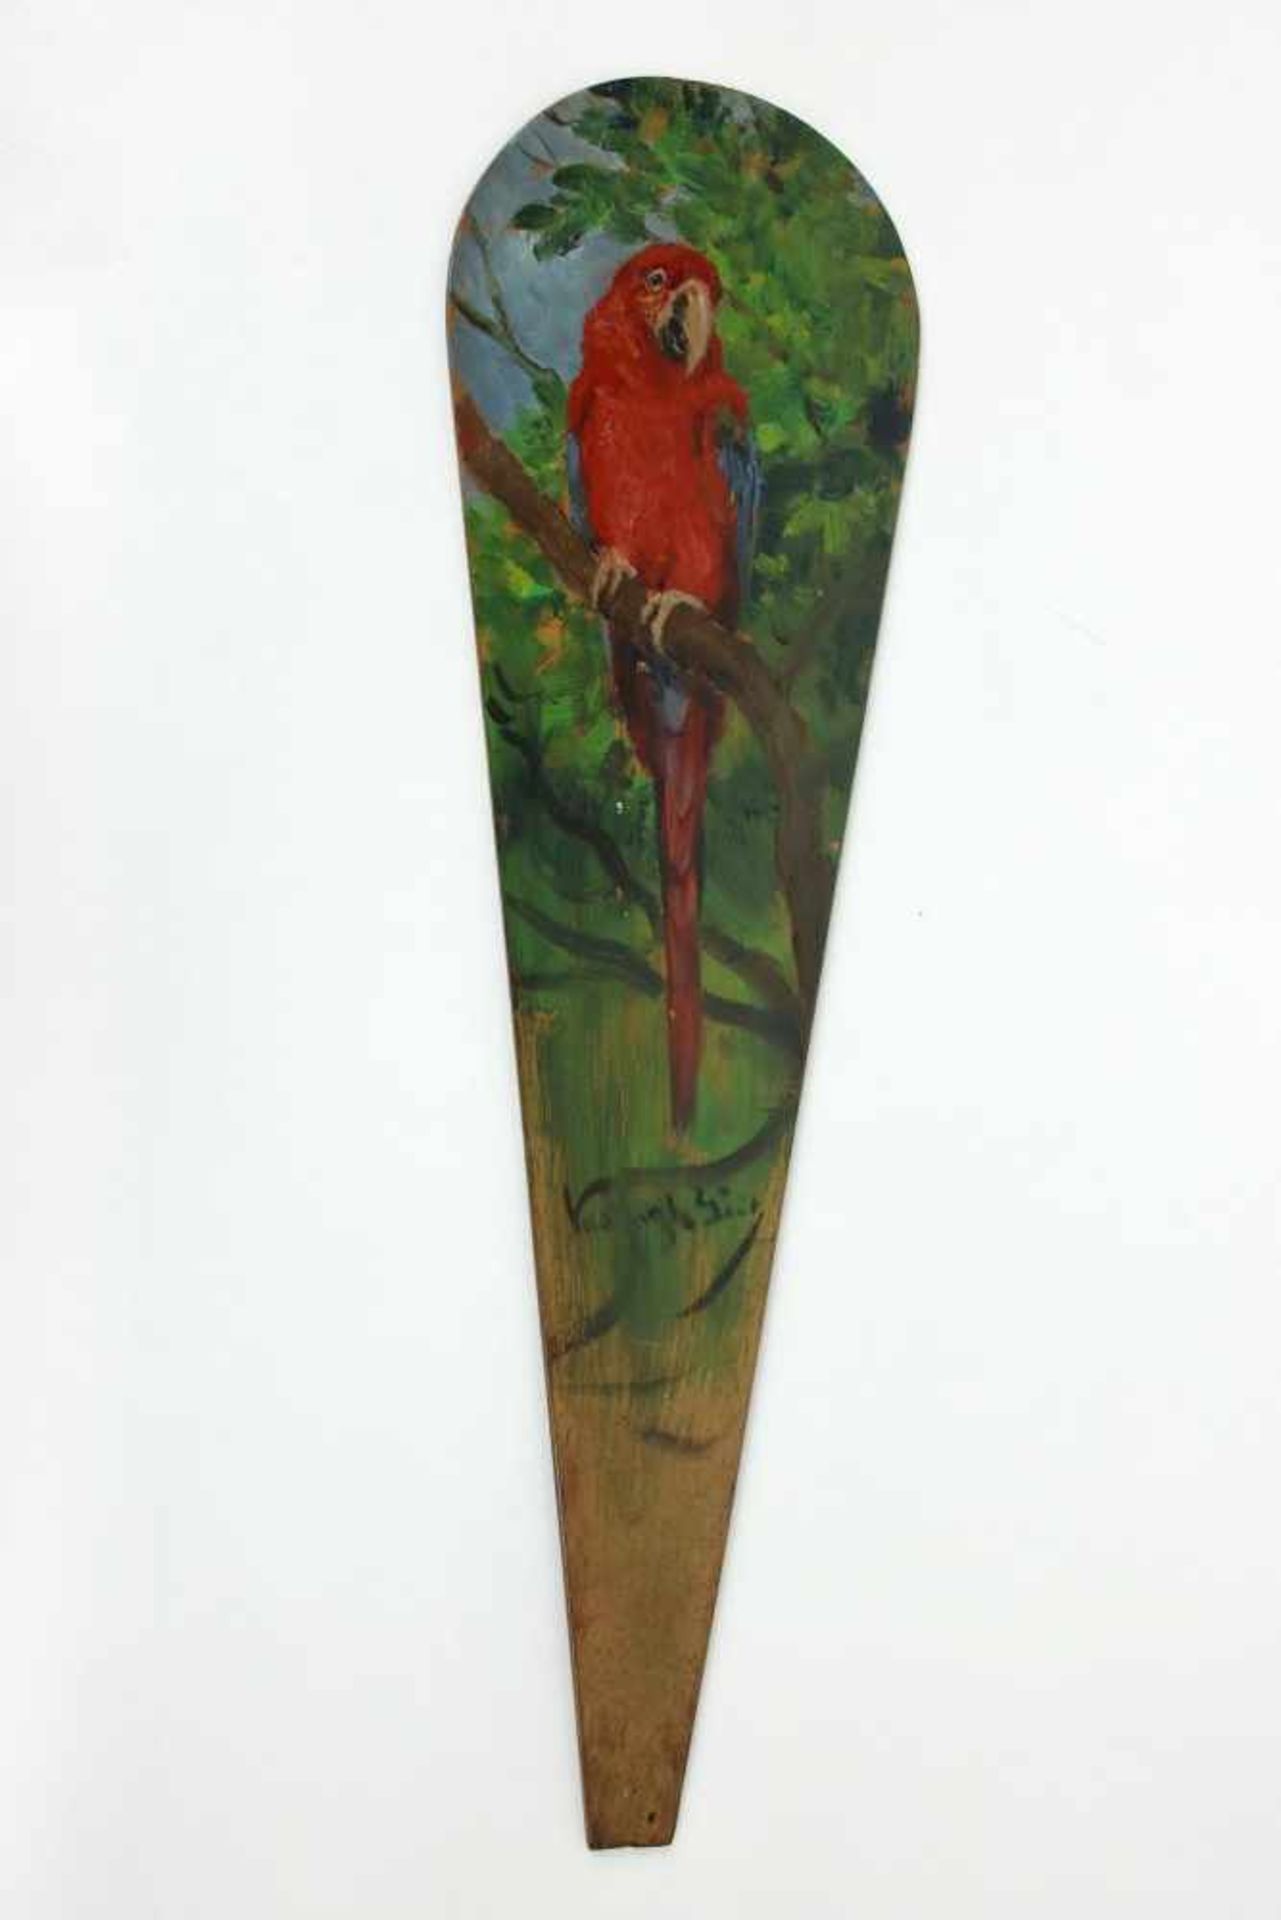 Geza Vastagh(1866 - 1919)"Papagei"Öl auf HolzSigniert, Teil eines Fächerbildes30 x 8 cm- - -22.